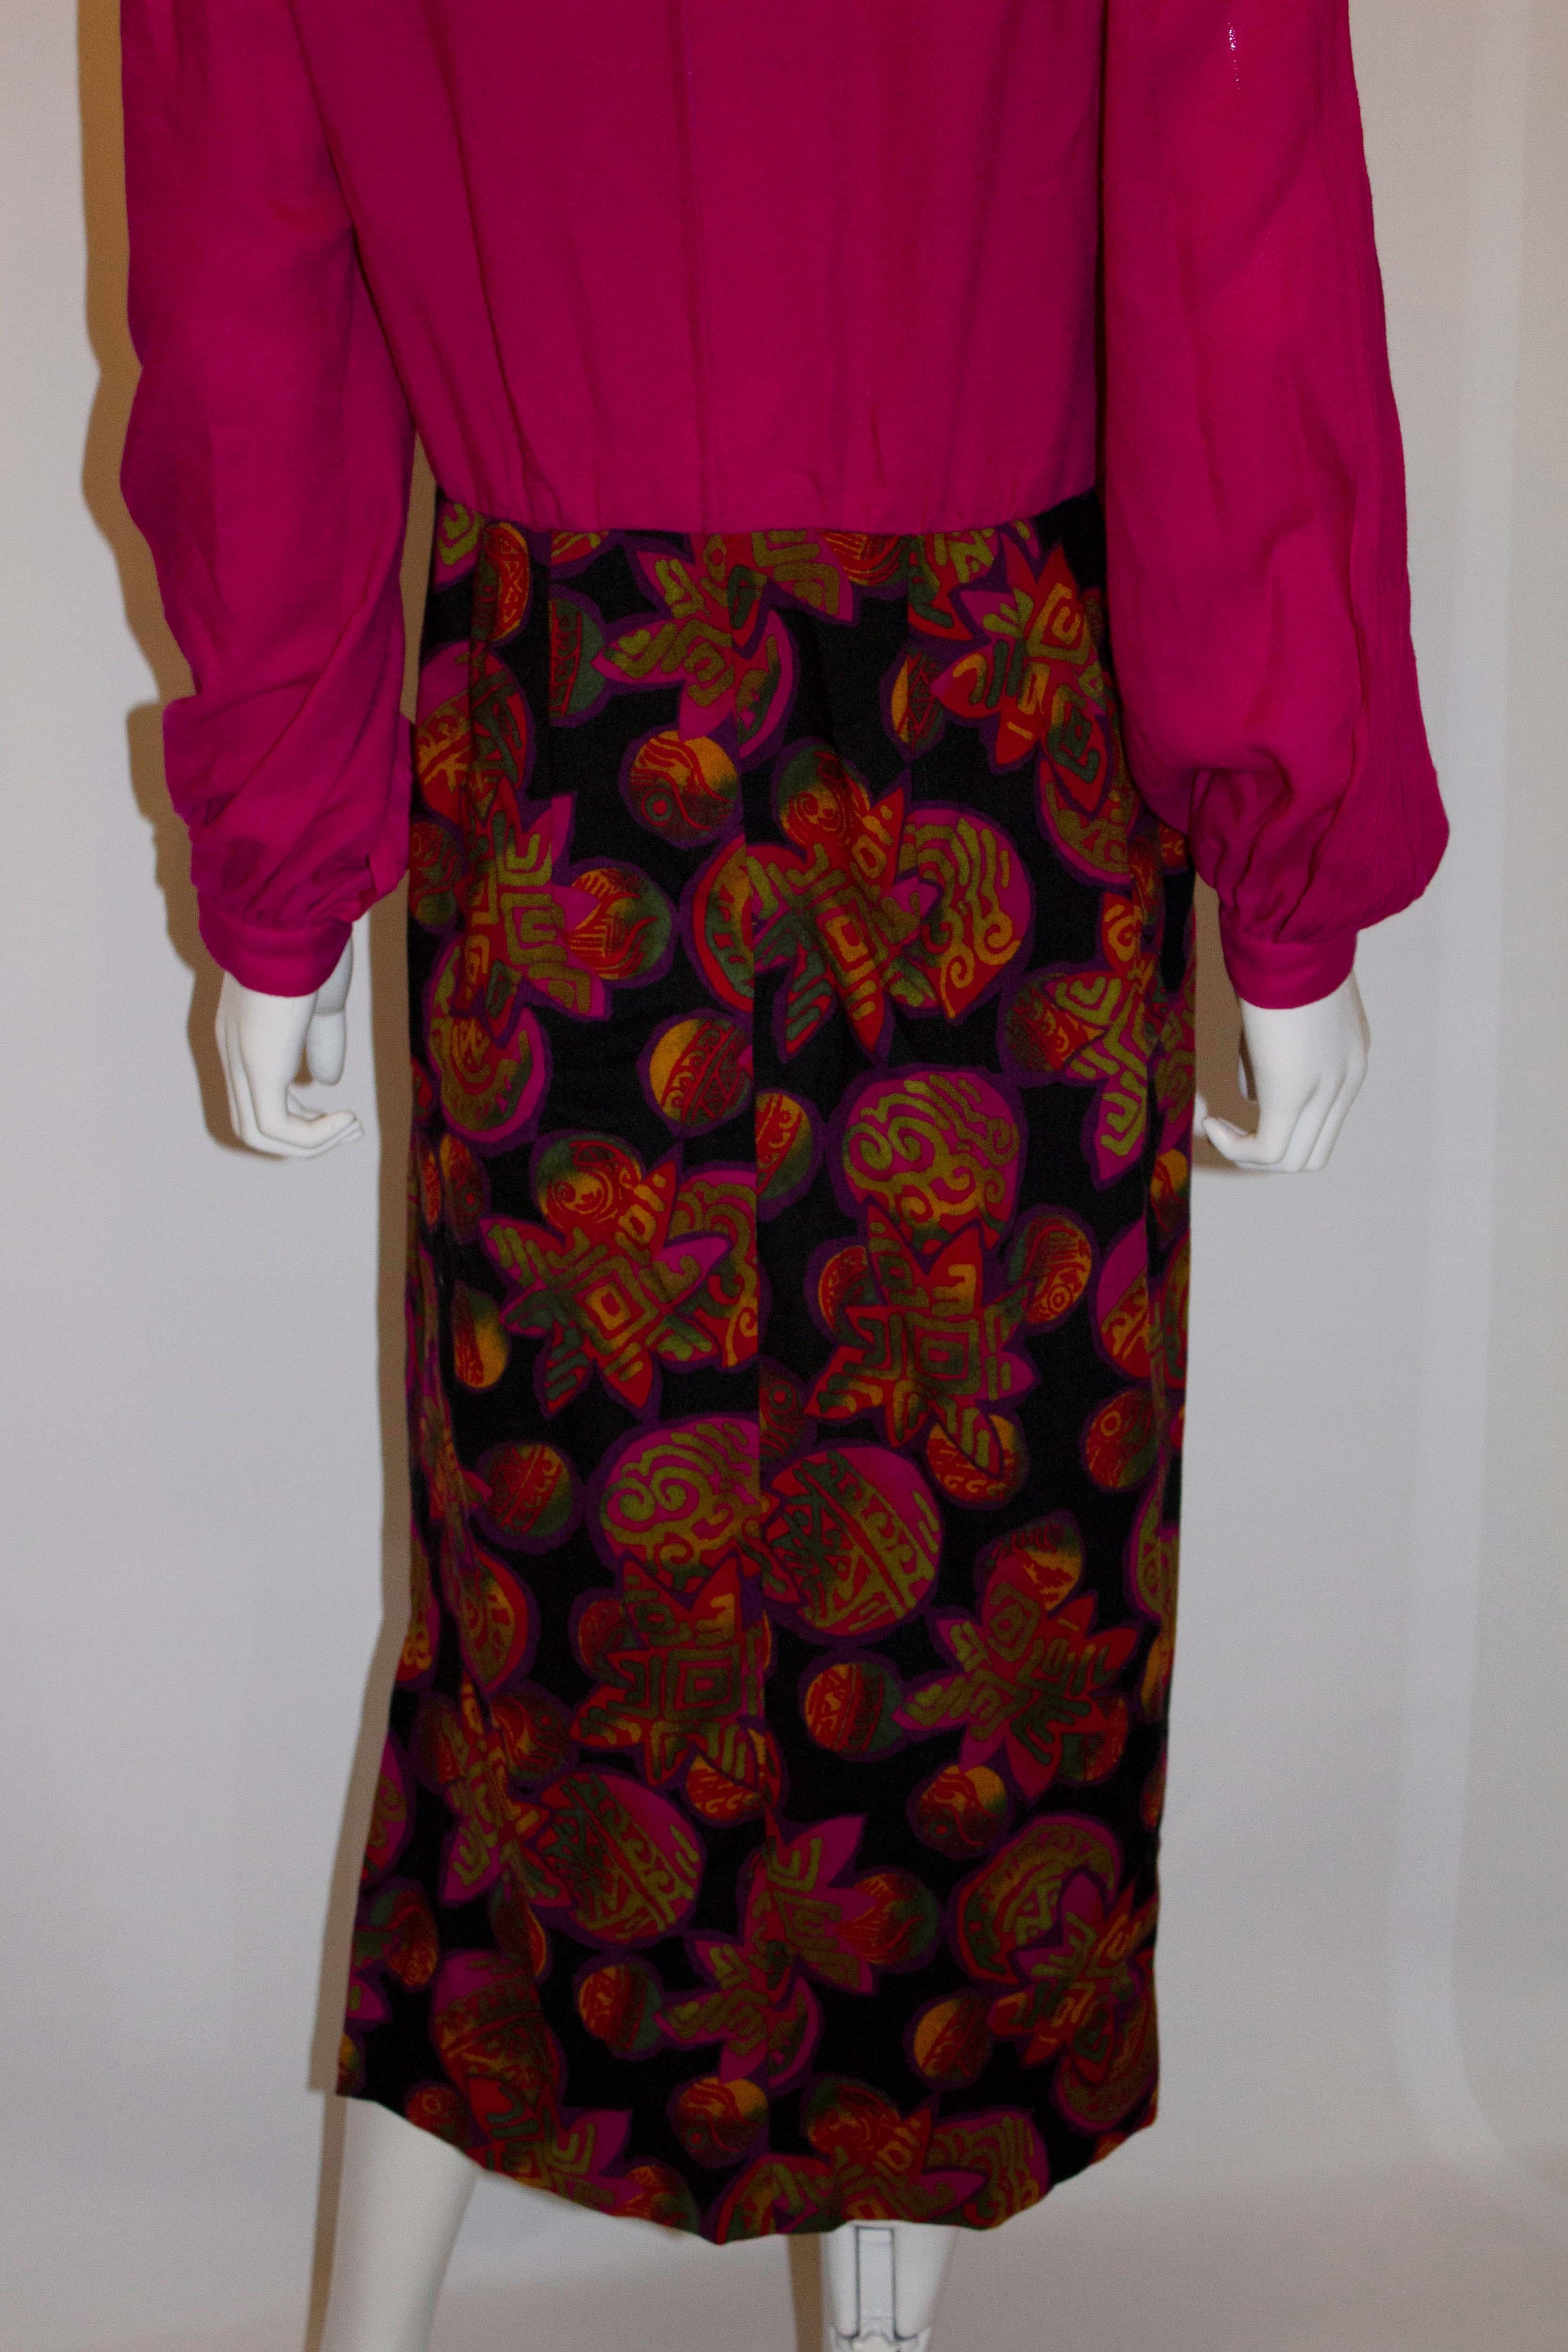 Une jolie robe vintage en crêpe de laine de Donald Campbell. La robe a une partie supérieure rose avec des plis sur le devant et les manches. La zone de la jupe est dans un imprimé. La robe a une fermeture éclair centrale au dos et est doublée.